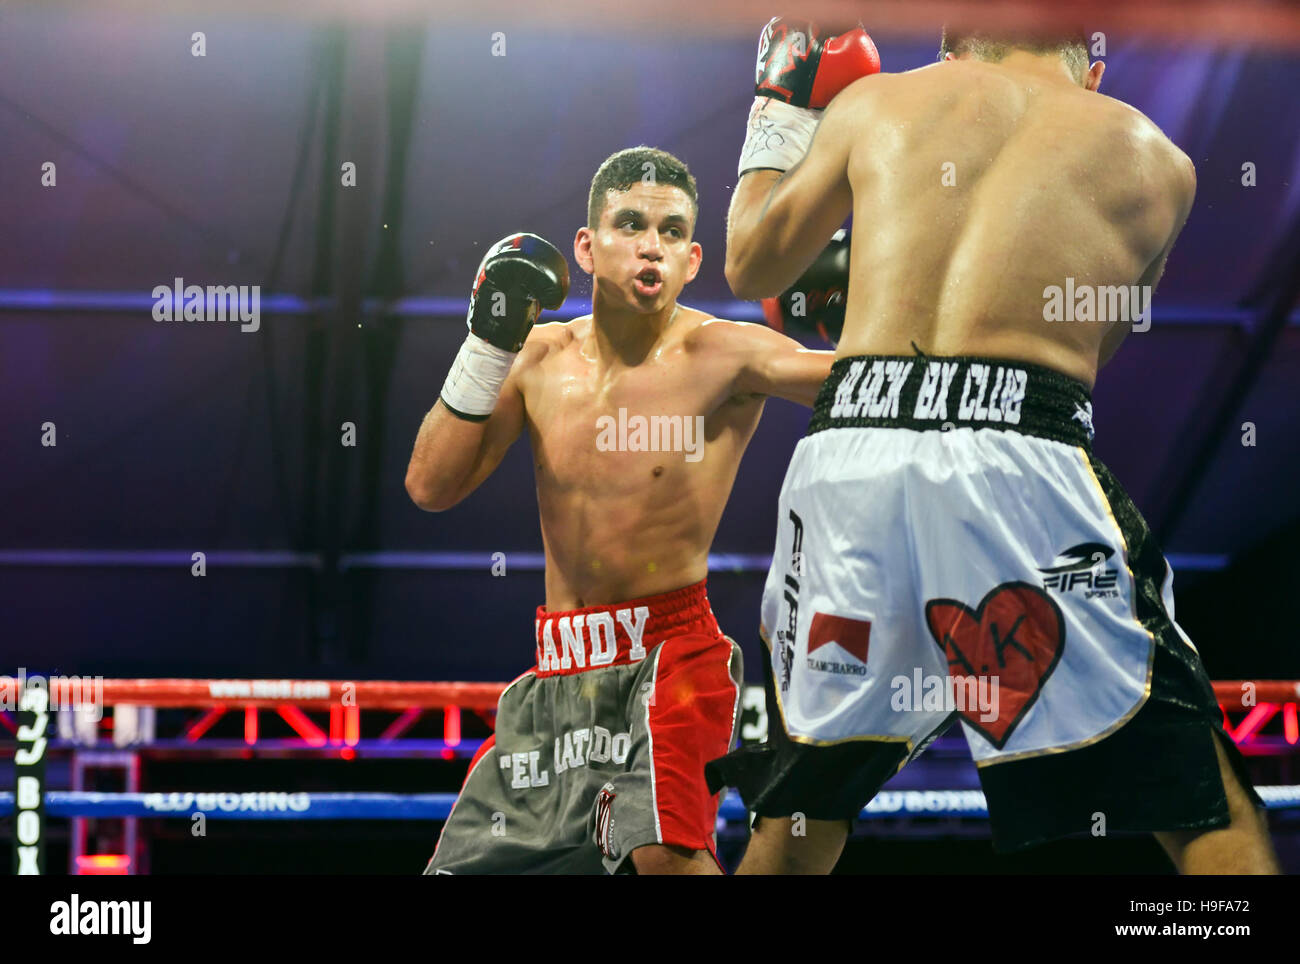 Las Vegas, Nevada November 18, 2016 - Randy 'El Matador' Moreno vs Daniel Perales at the “Knockout Night at the D” Stock Photo